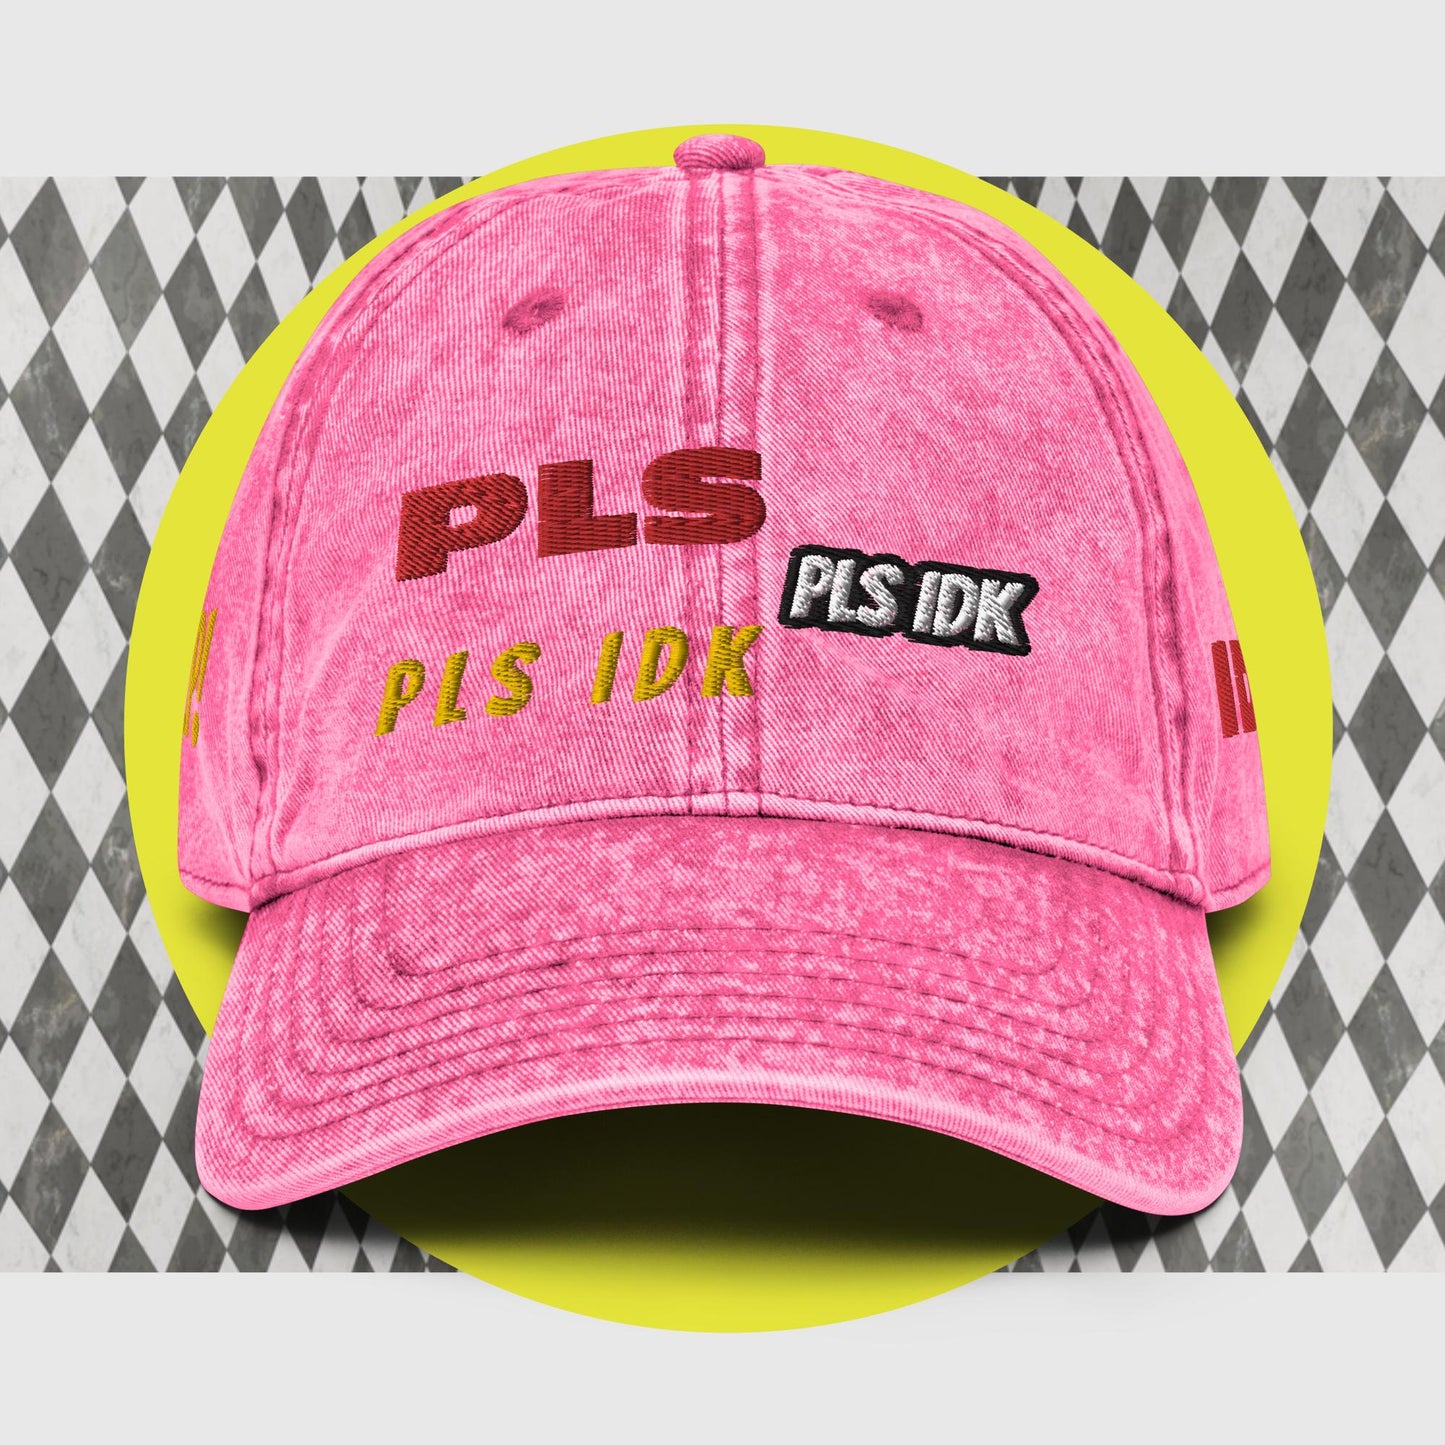 PLS IDK HAT